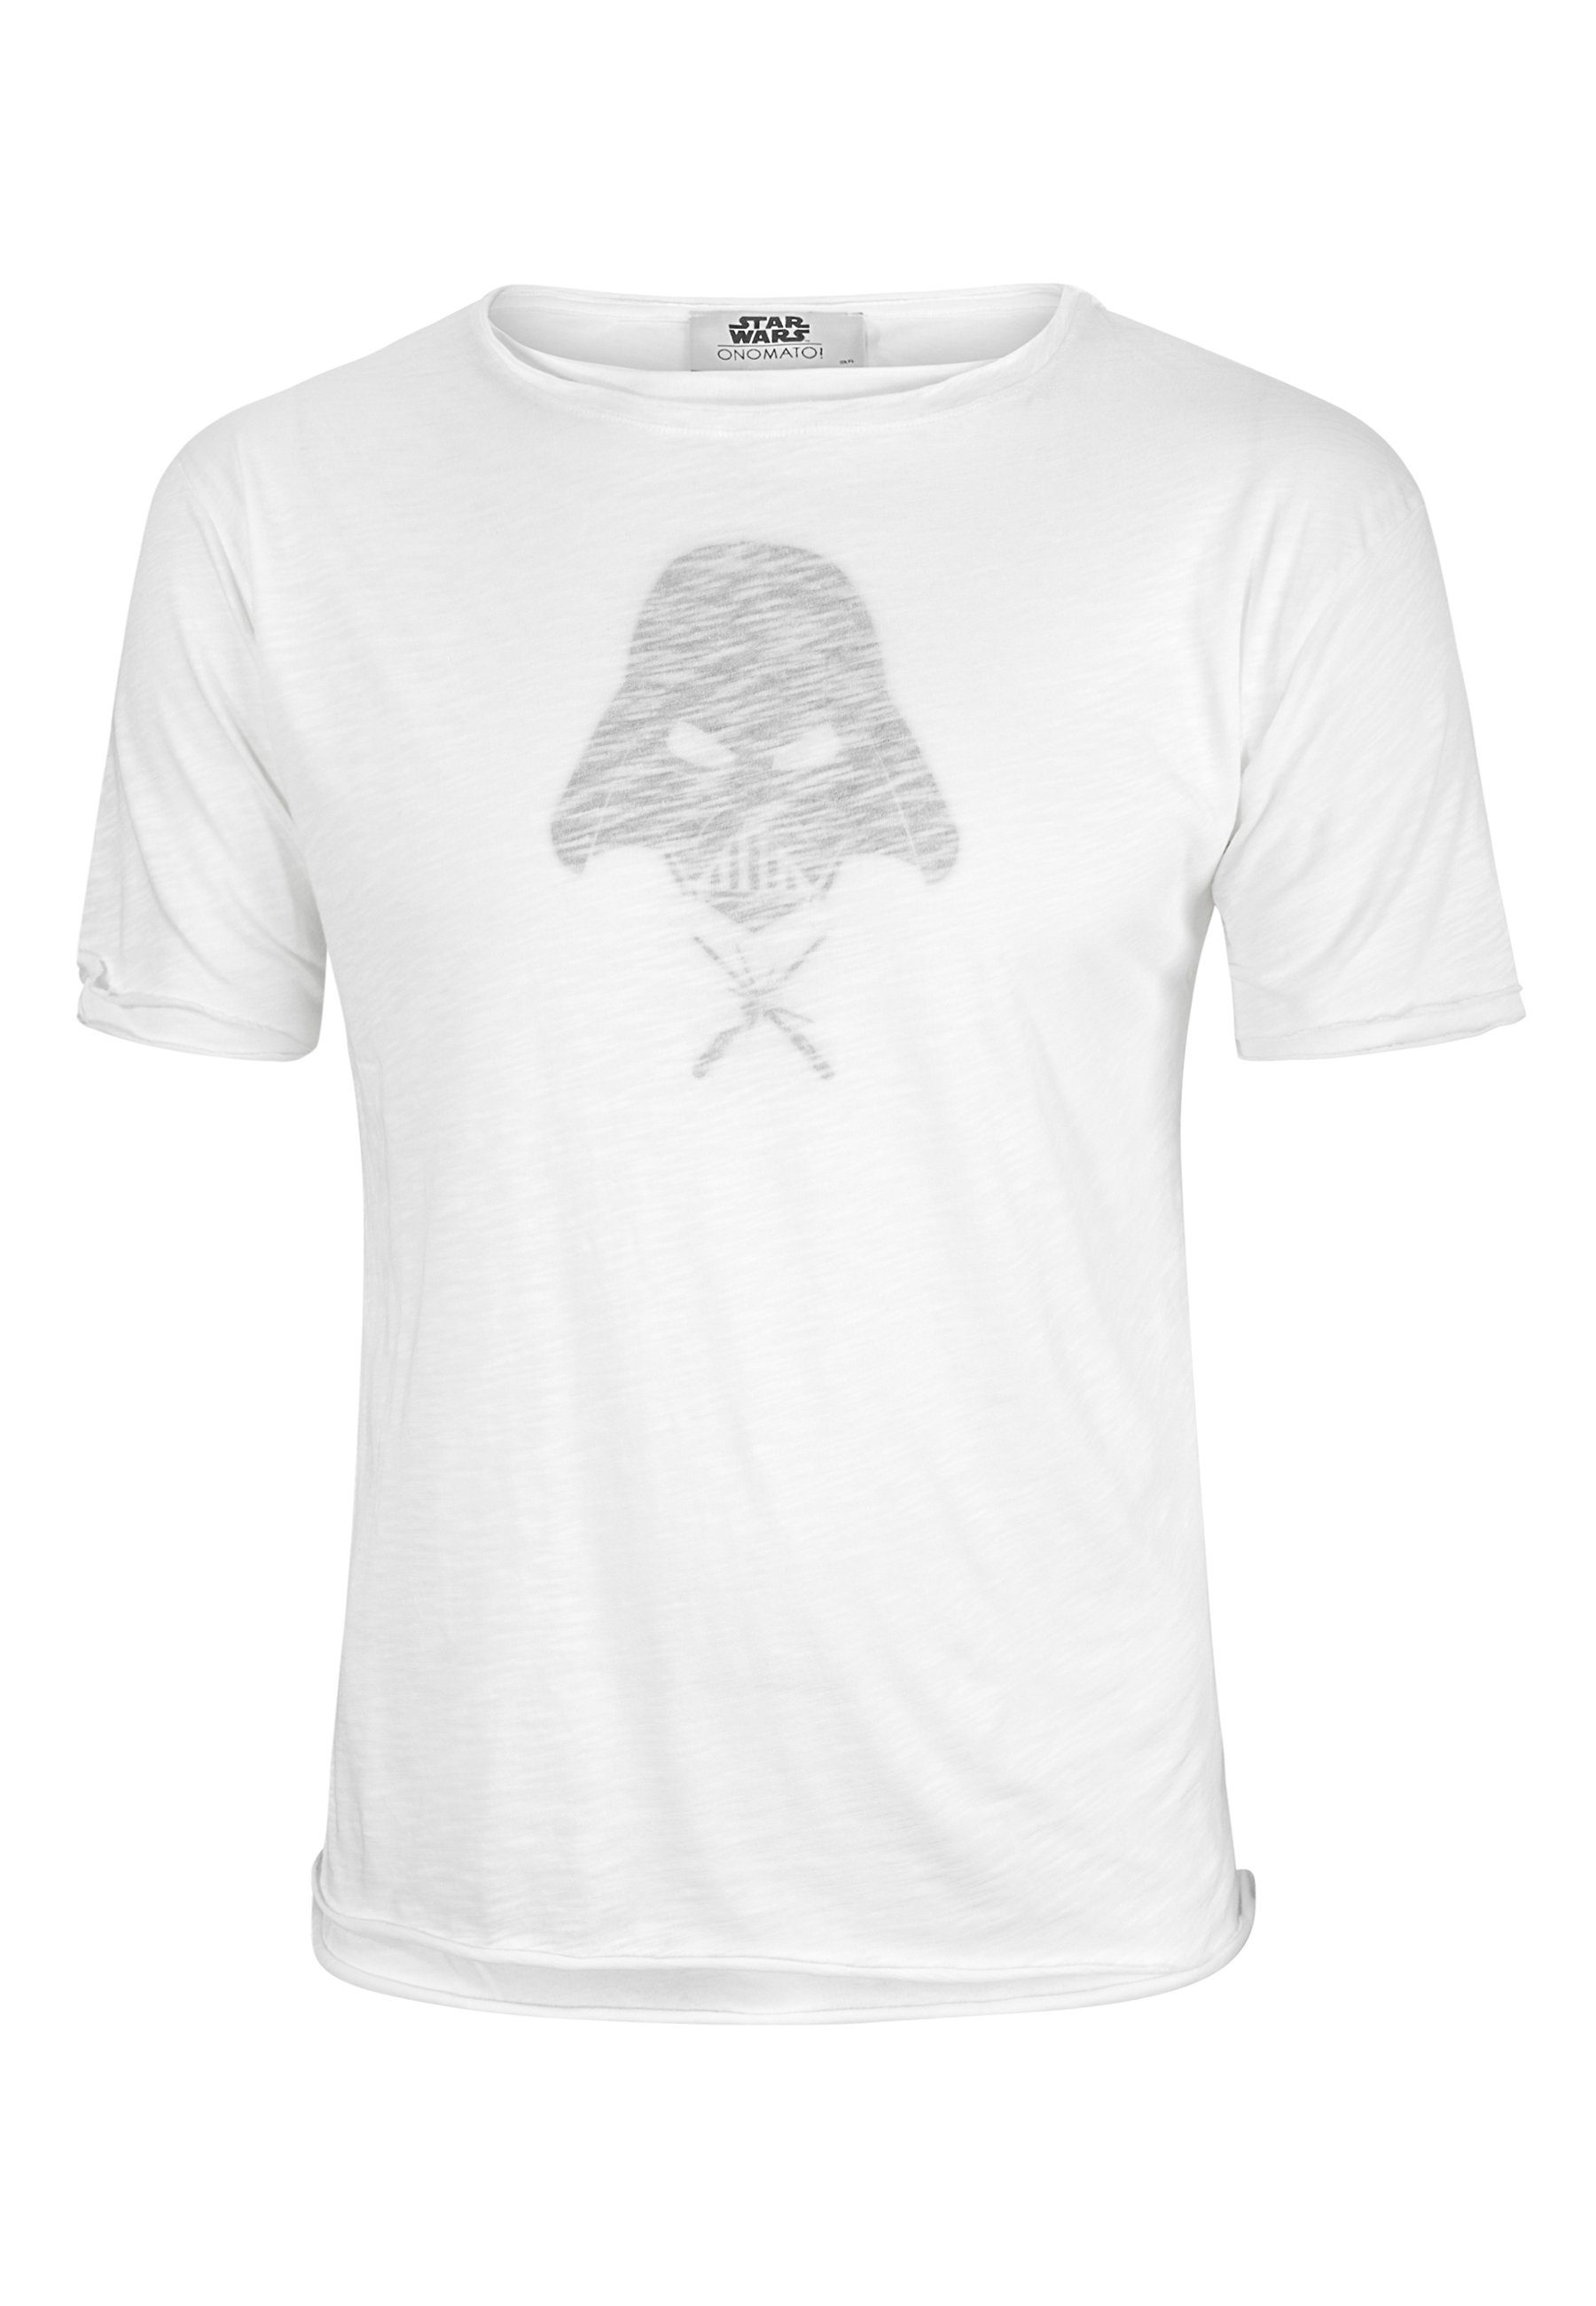 ONOMATO! T-Shirt Star Wars Darth Vader Herren T-Shirt Erwachsenen Kurzarm-Shirt Weiß Double Layer